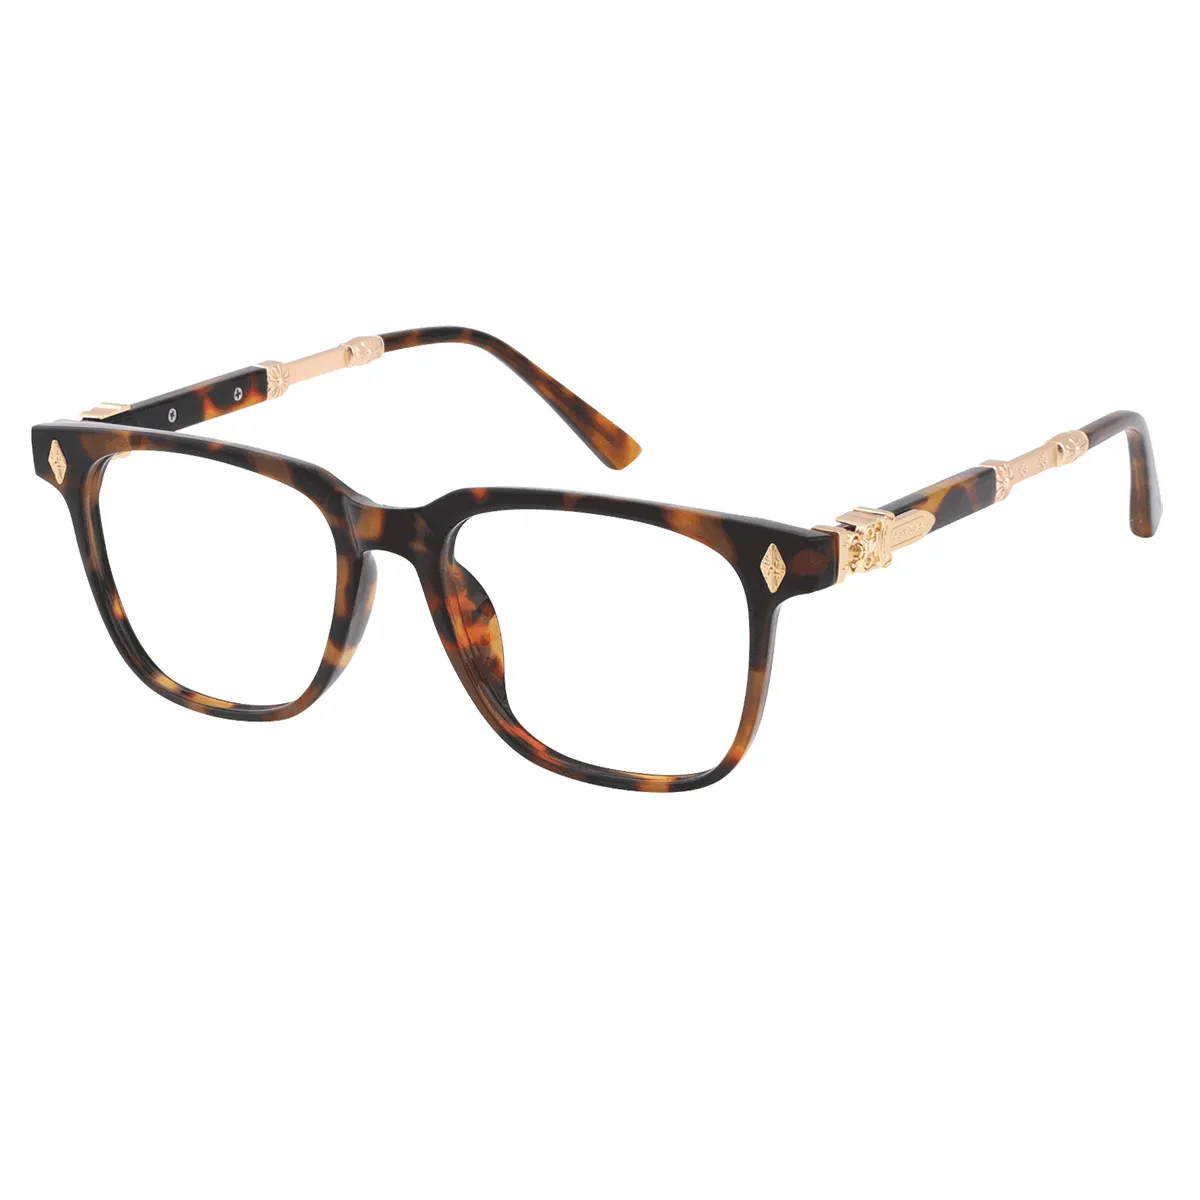 Todd - Square demi/gold Glasses for Men